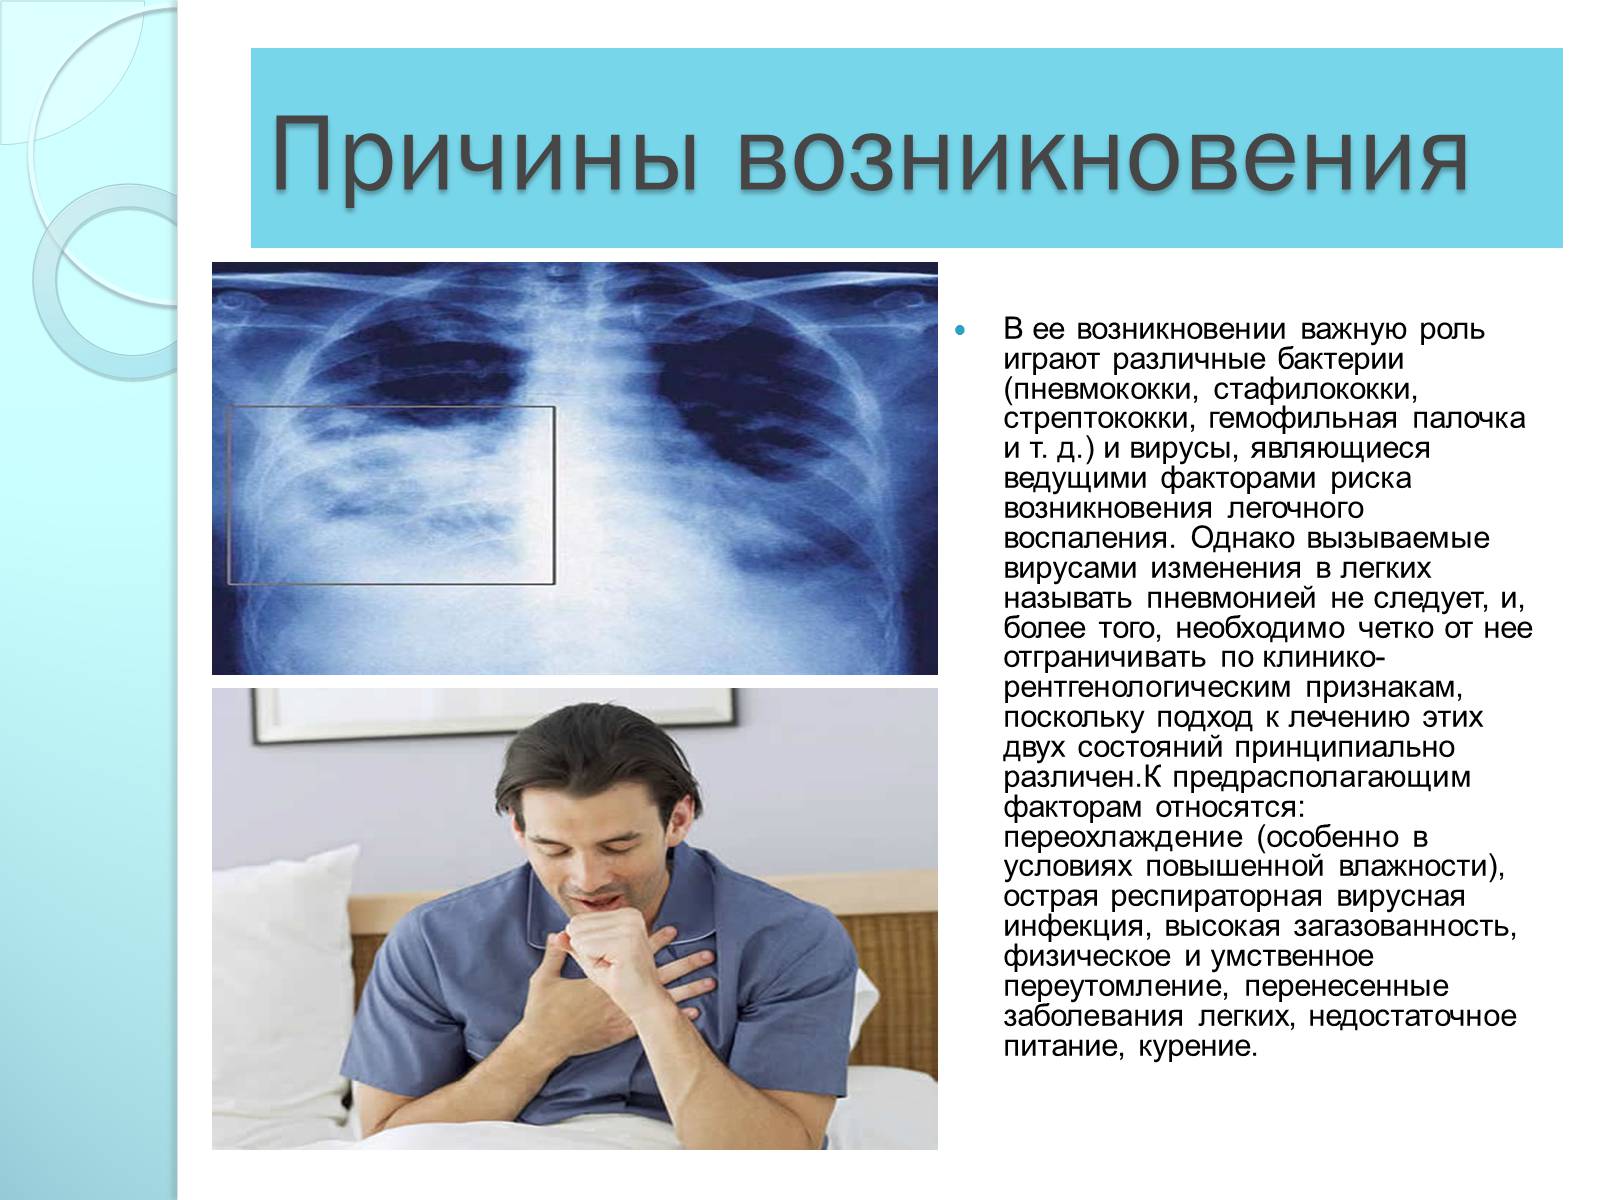 Причины болезней органов дыхания